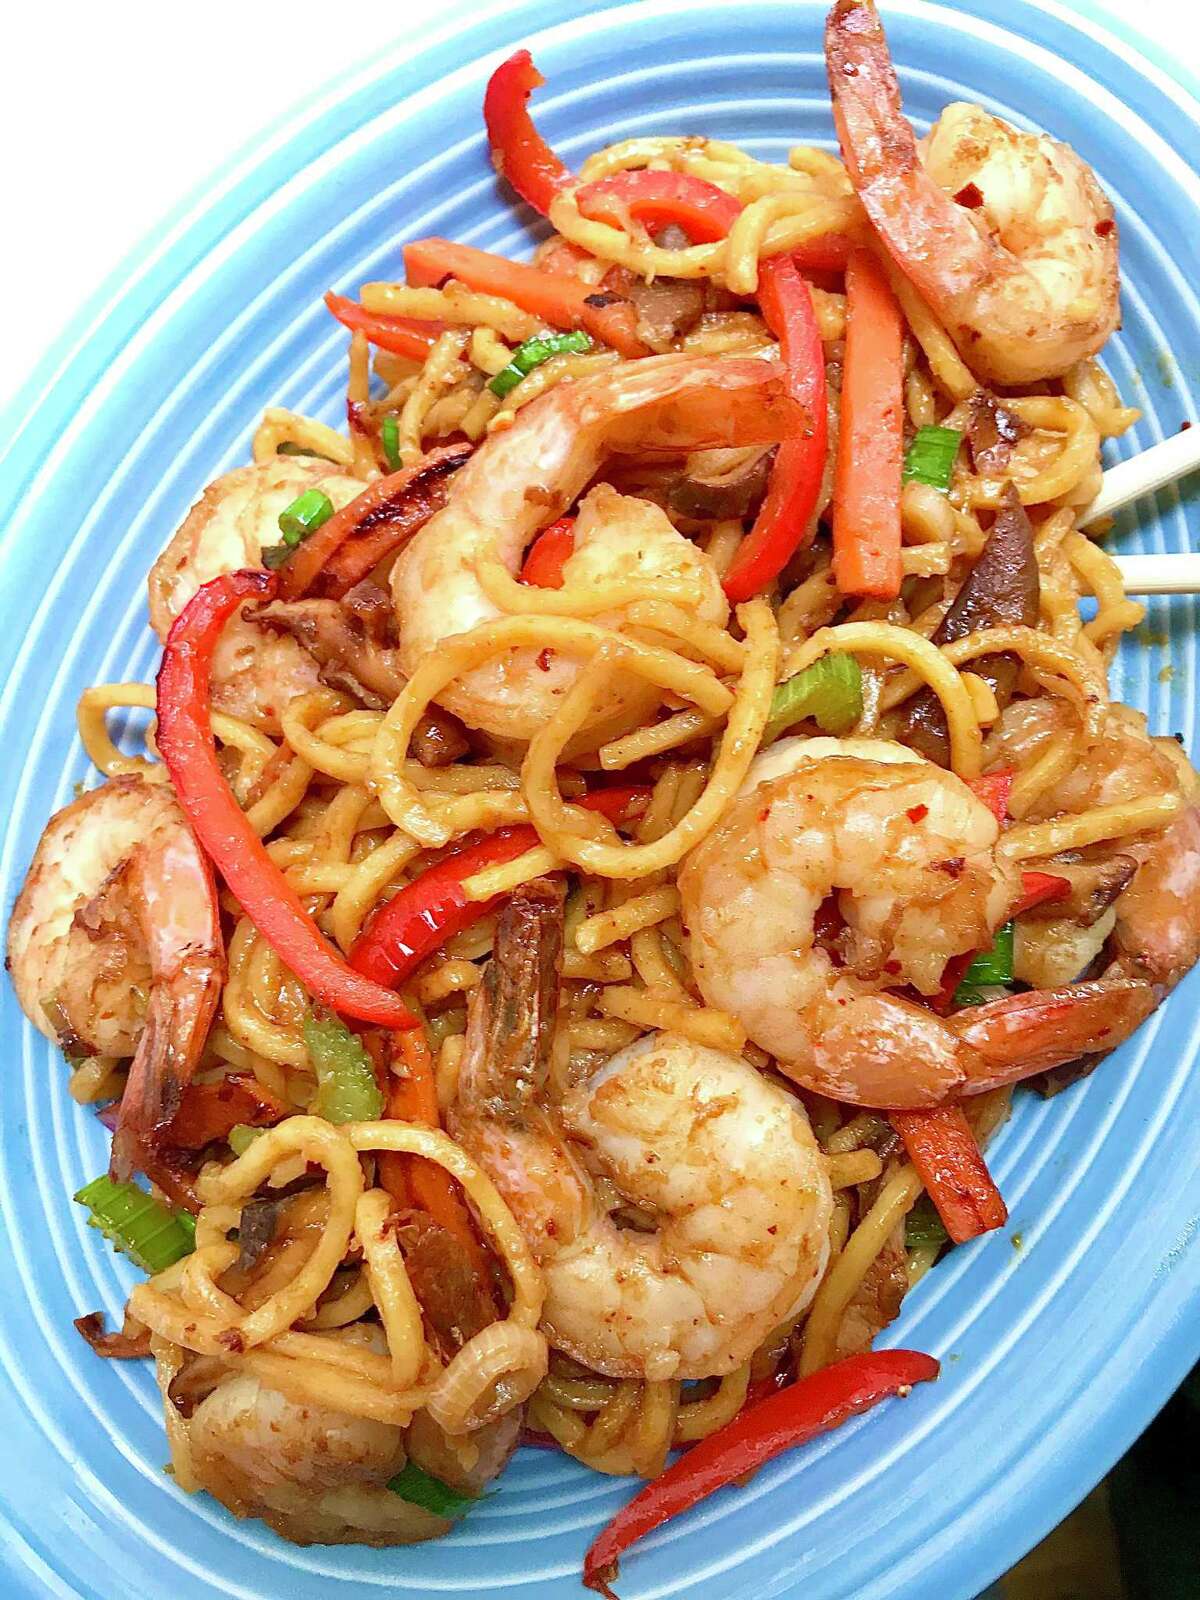 Stir fried noodles with shrimp.